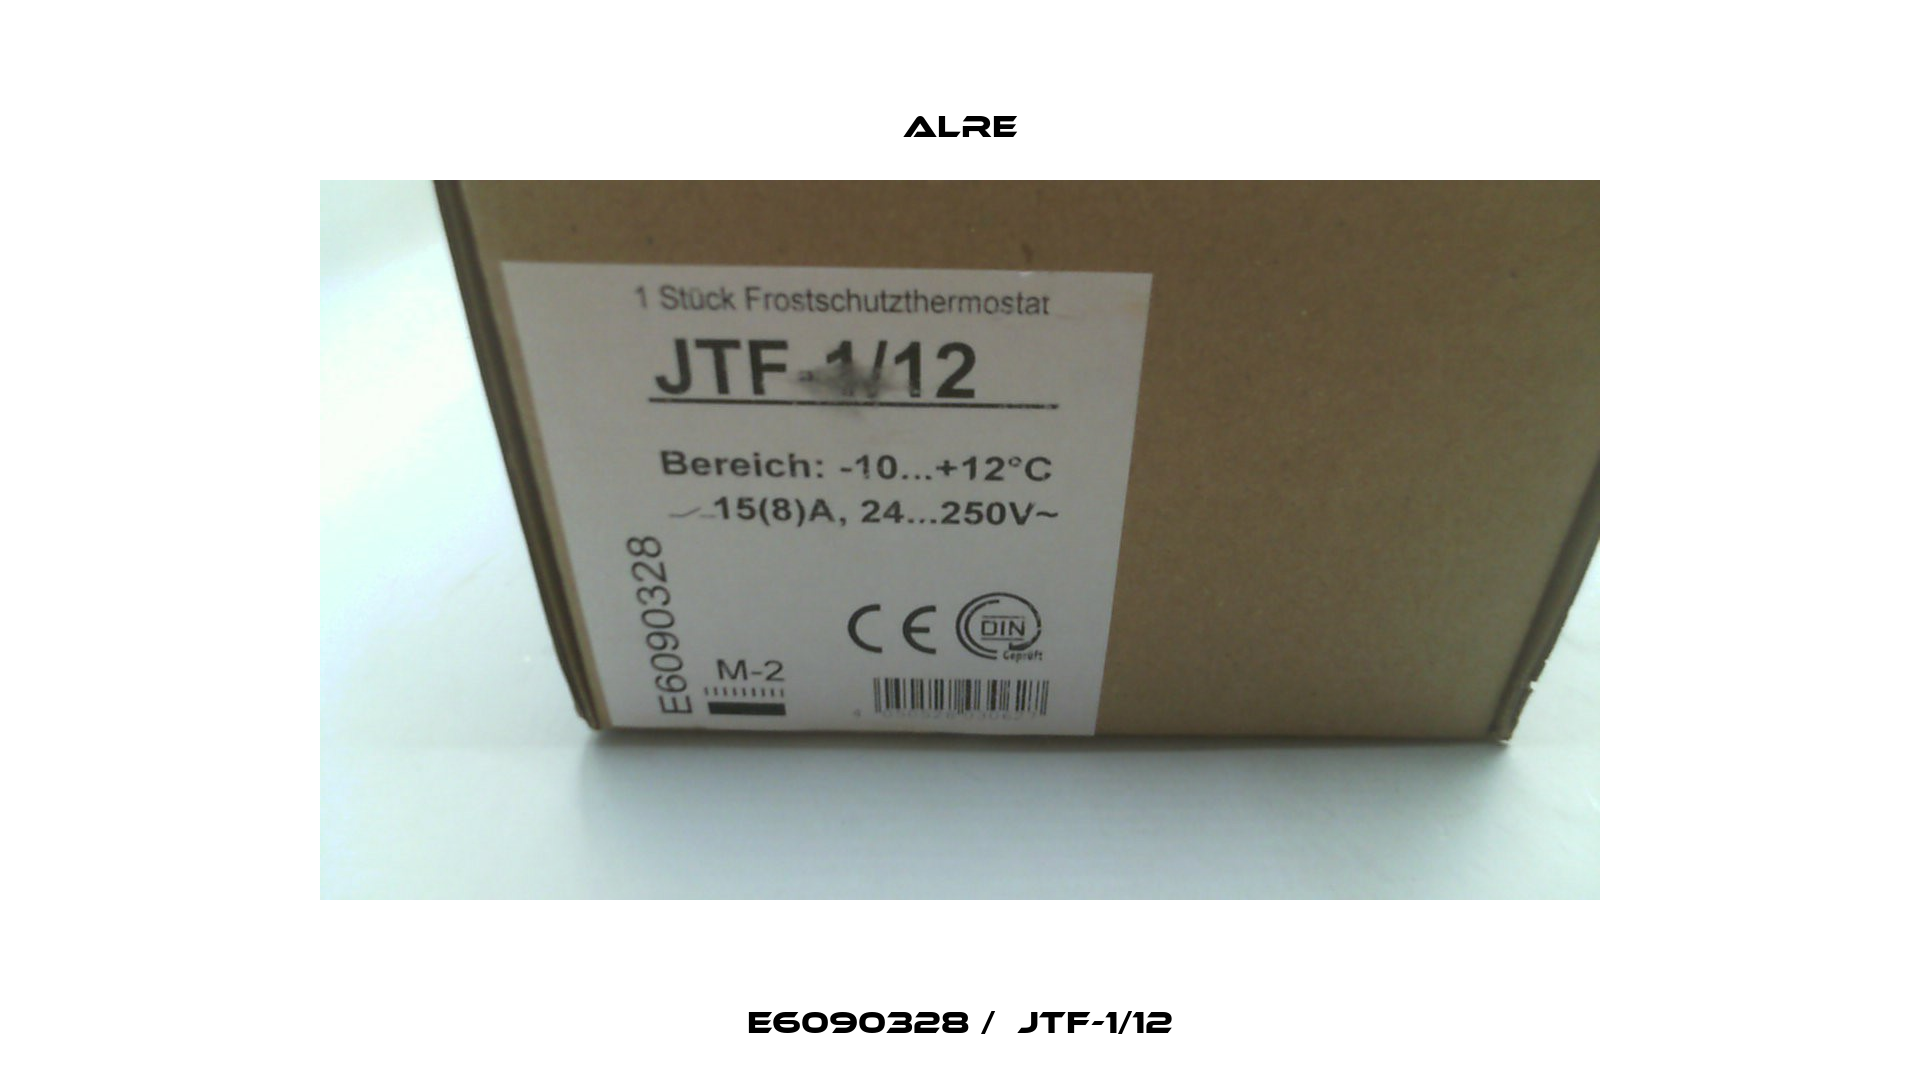 E6090328 /  JTF-1/12 Alre